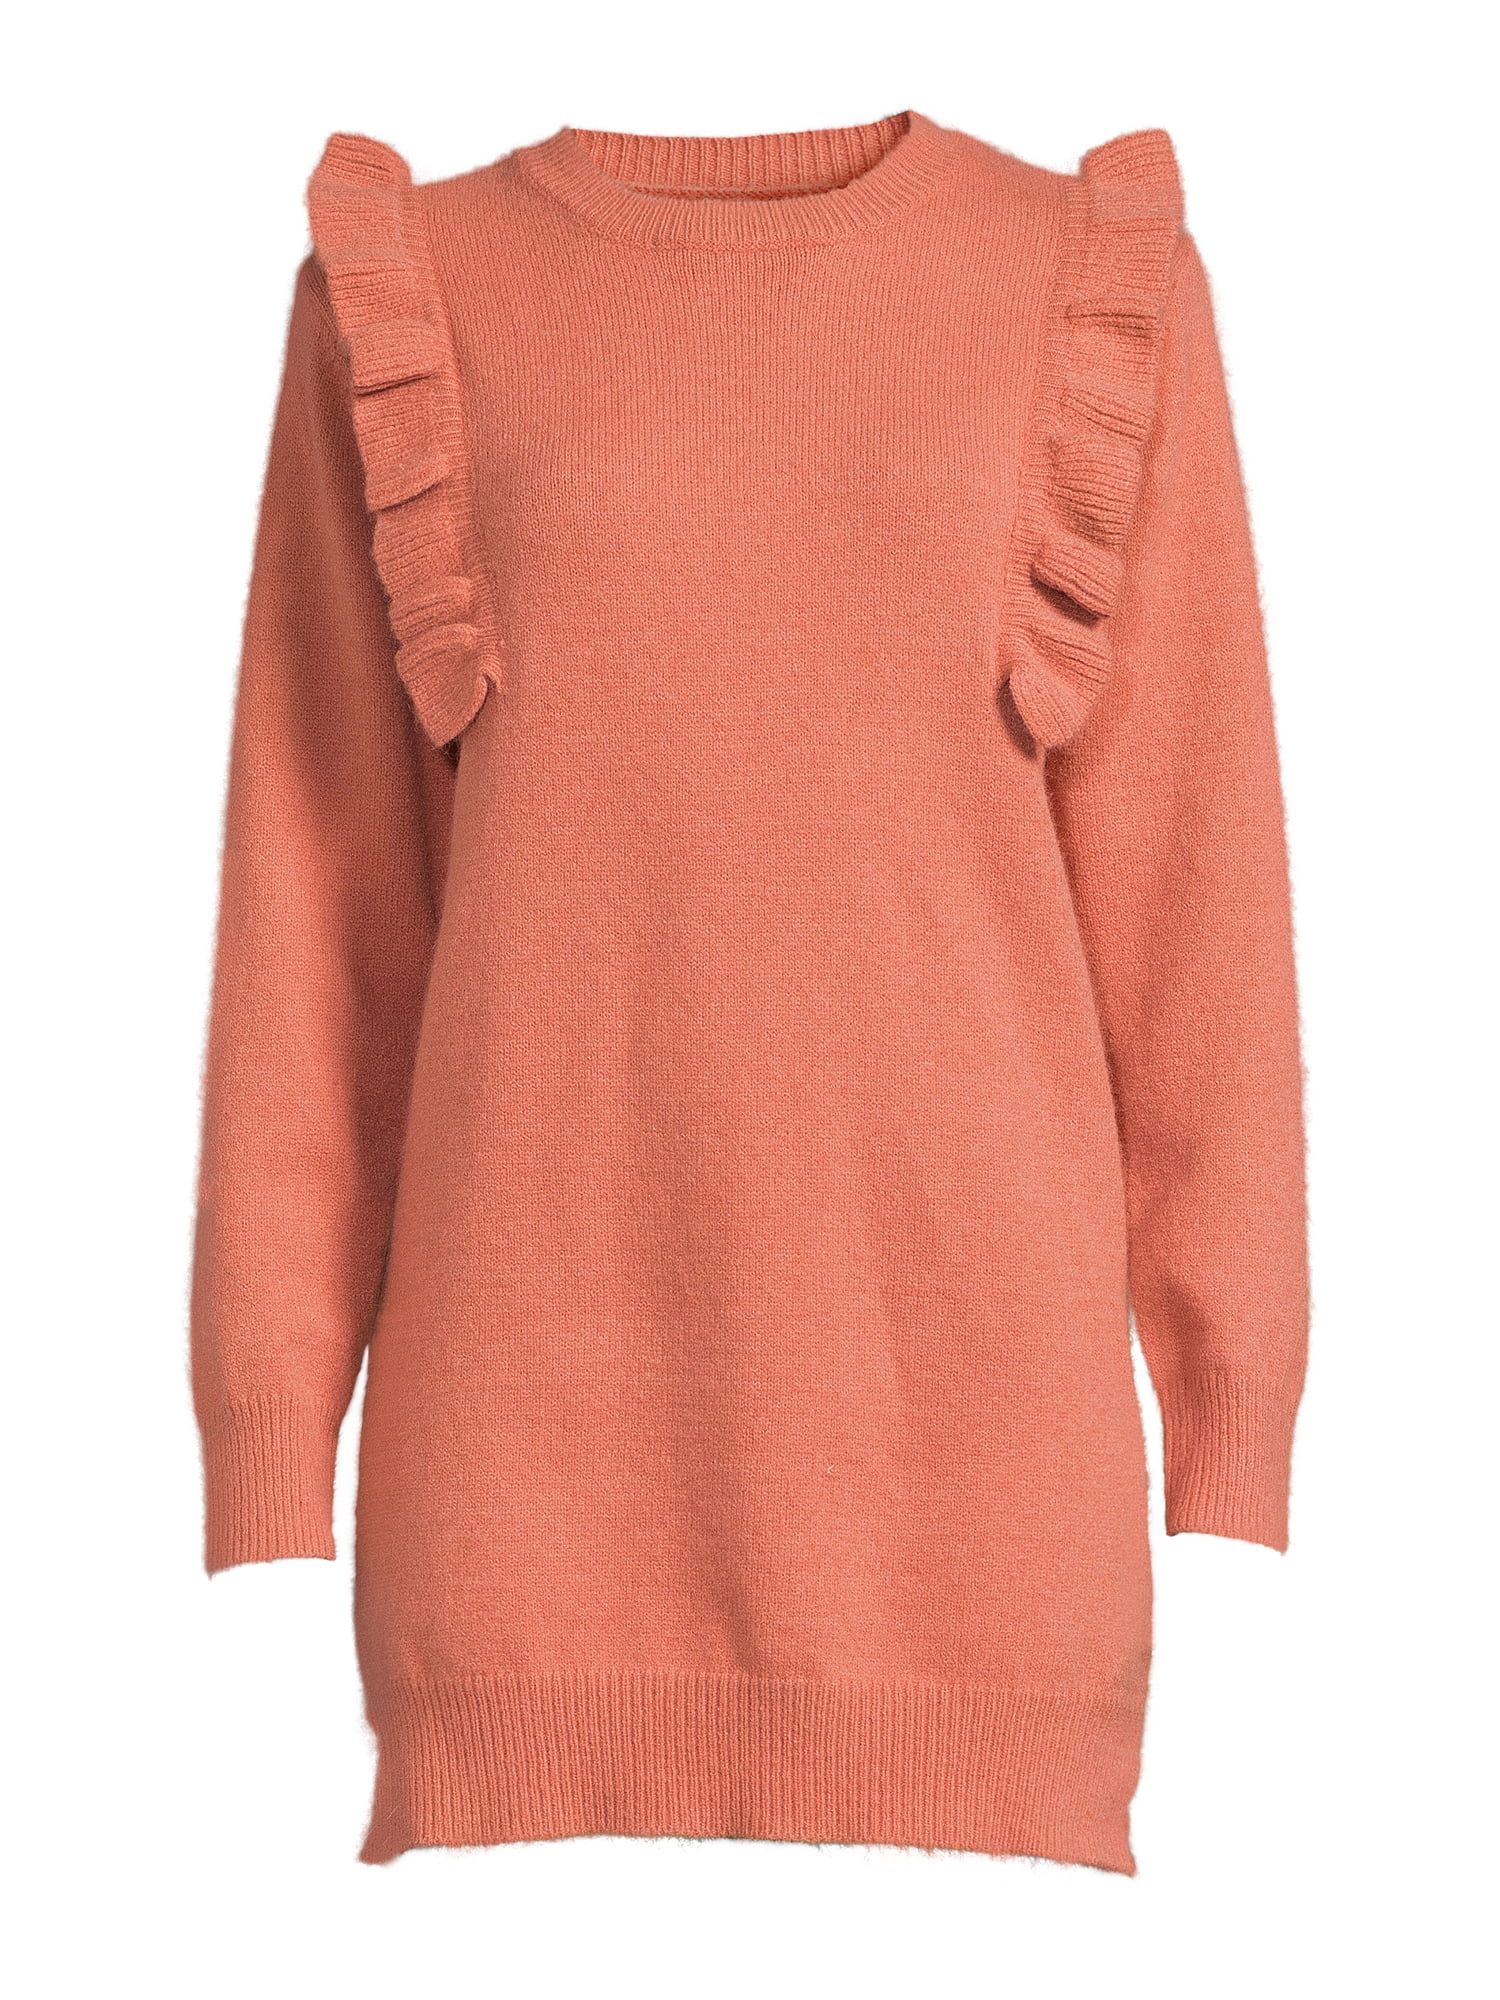 Dreamers by Debut Women's Ruffle Sleeve Sweater Dress - Walmart.com | Walmart (US)